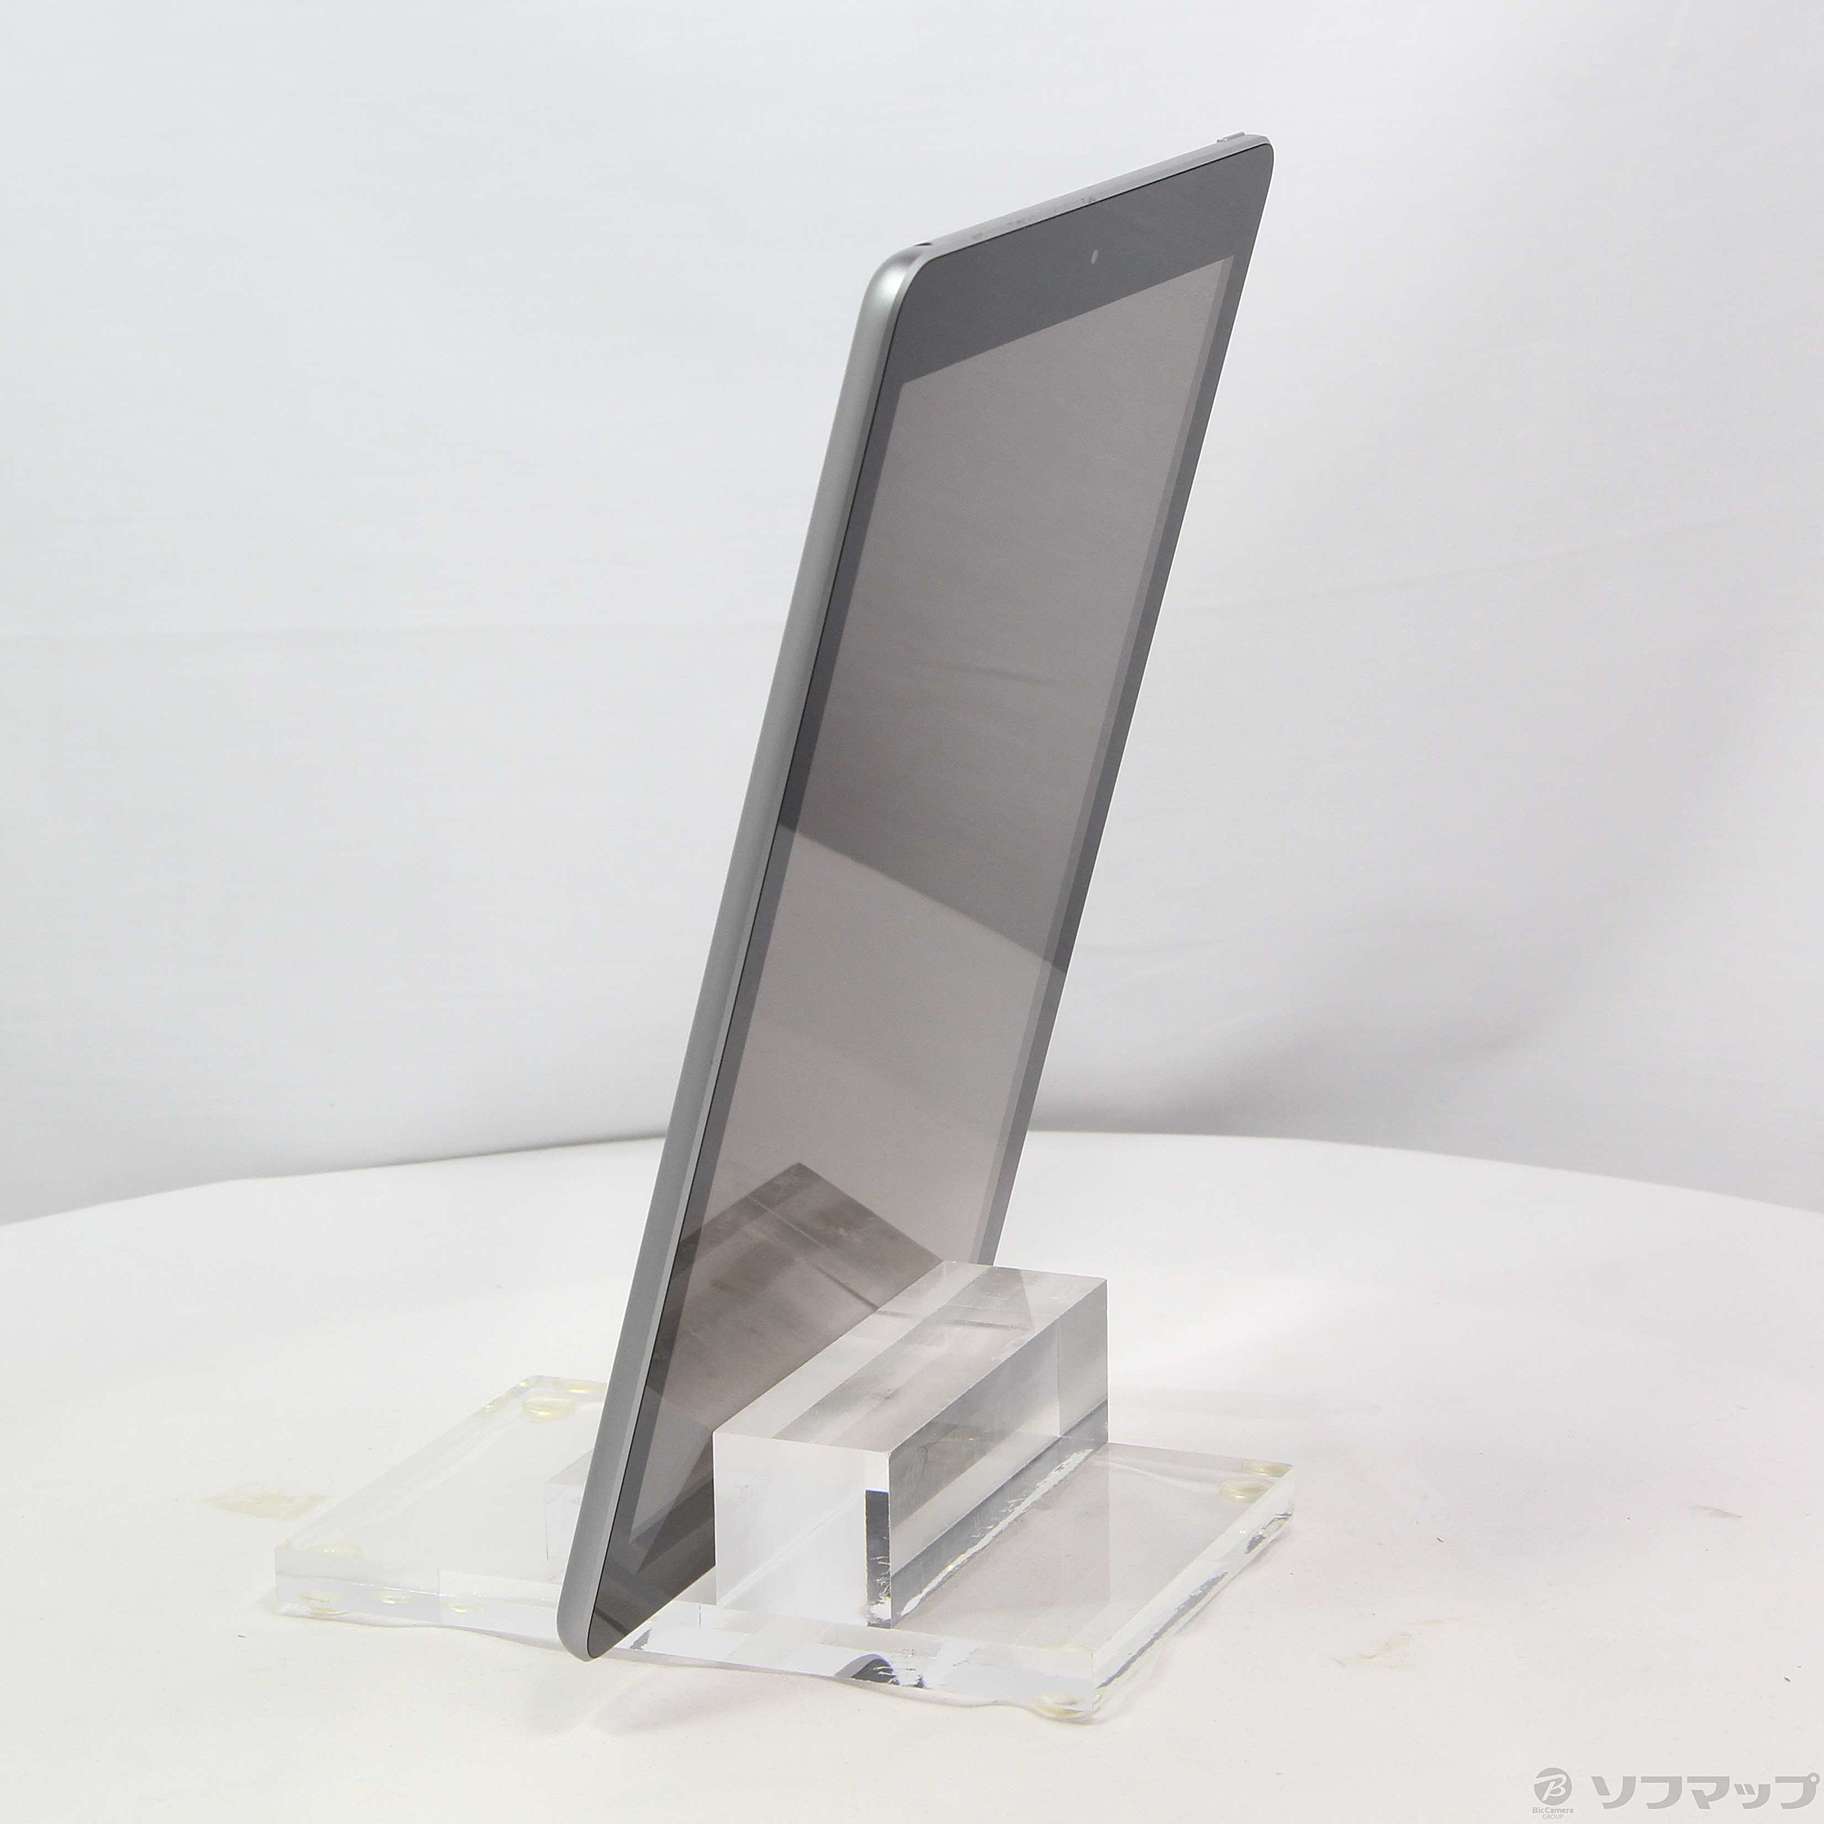 中古】iPad 第6世代 32GB スペースグレイ MR7F2J／A Wi-Fi